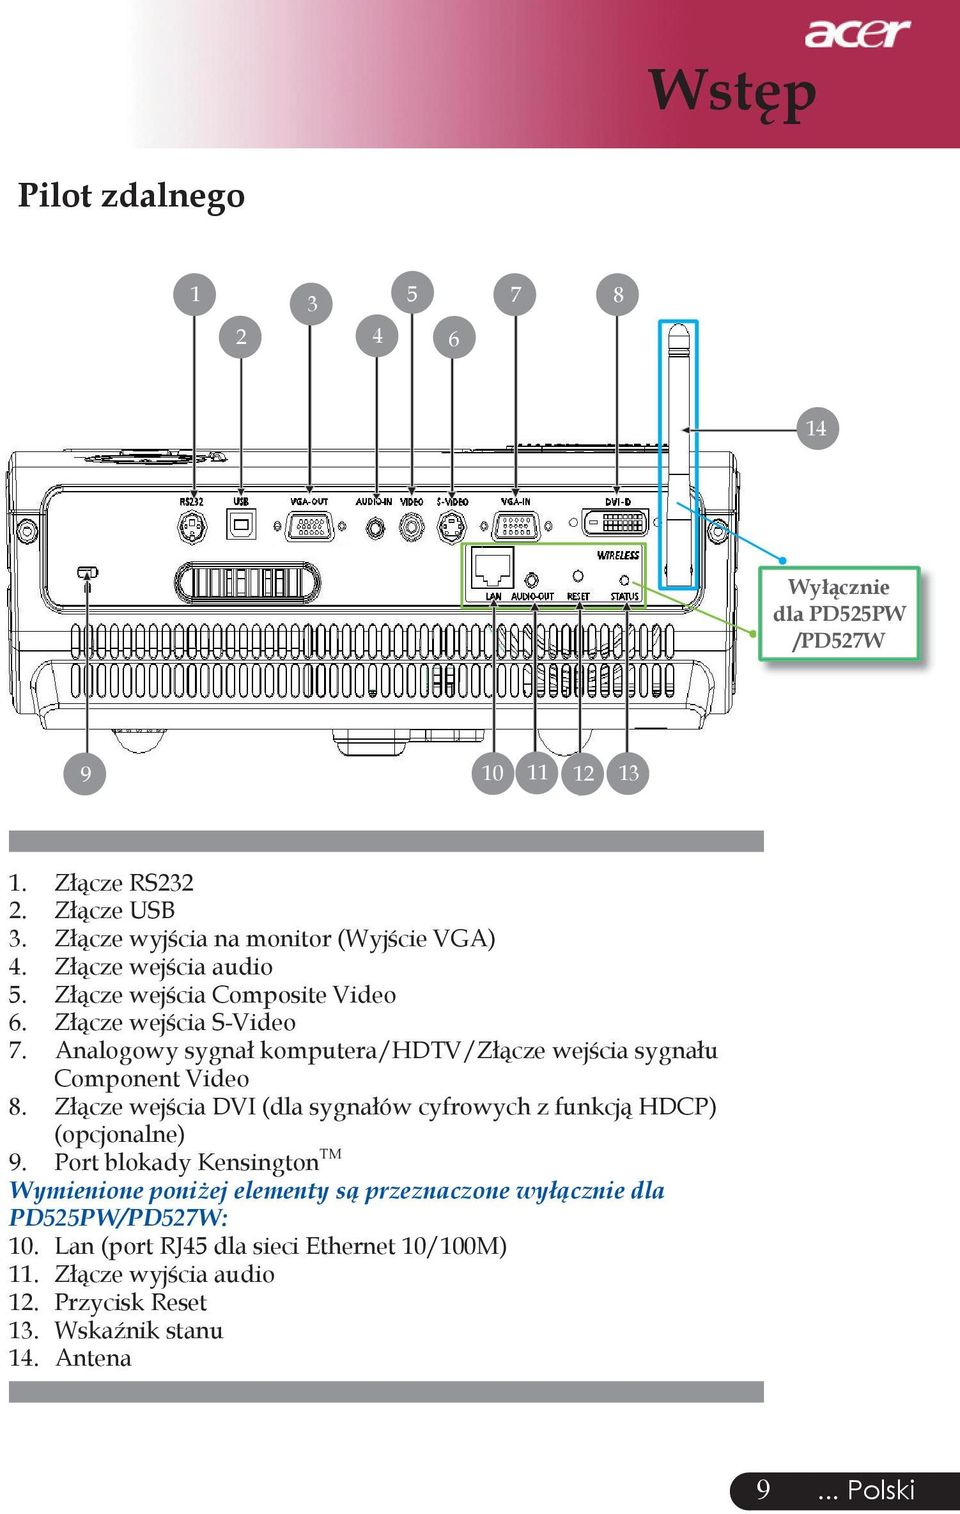 Analogowy sygnał komputera/hdtv/złącze wejścia sygnału Component Video 8. Złącze wejścia DVI (dla sygnałów cyfrowych z funkcją HDCP) (opcjonalne) 9.